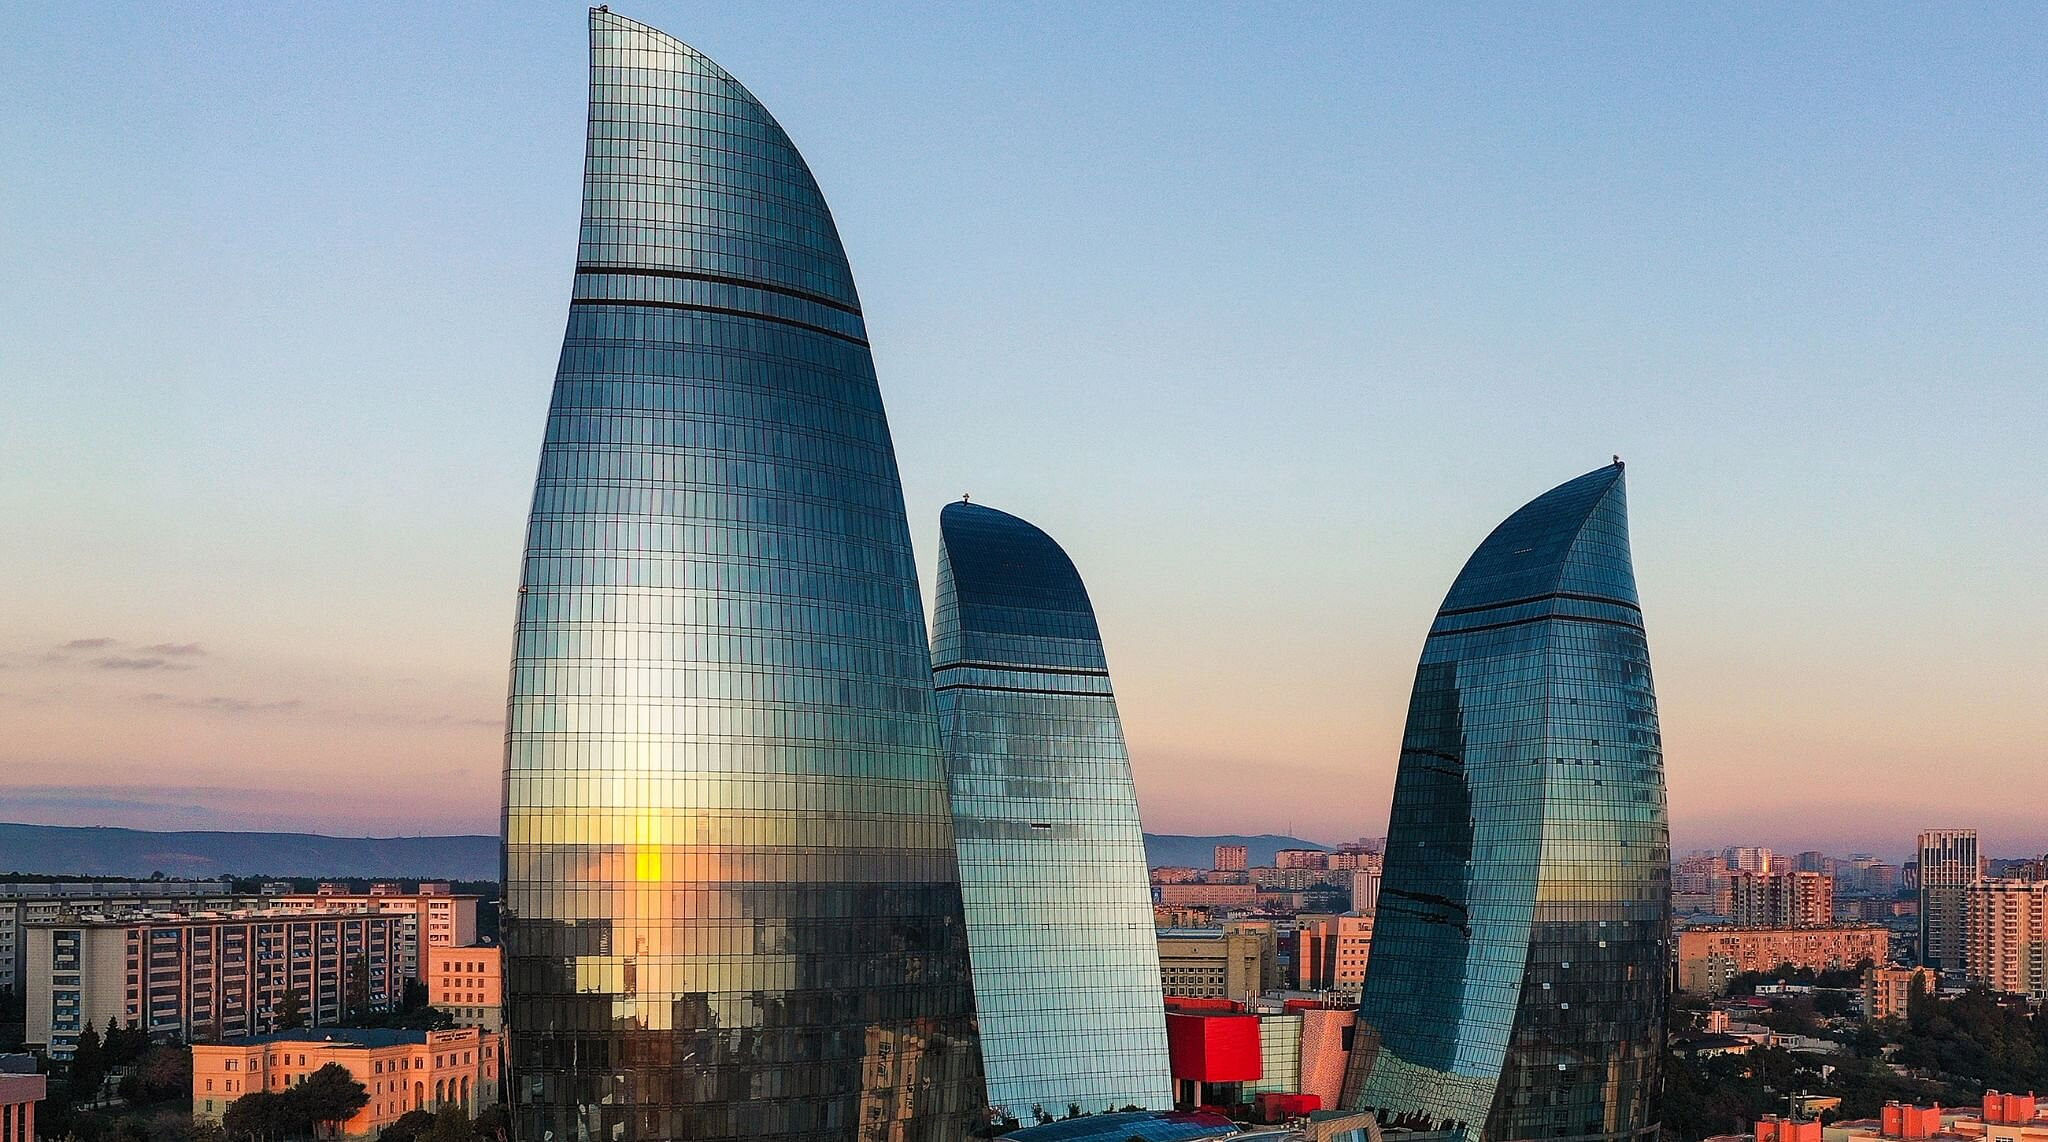 Flame towers in Azerbaijan